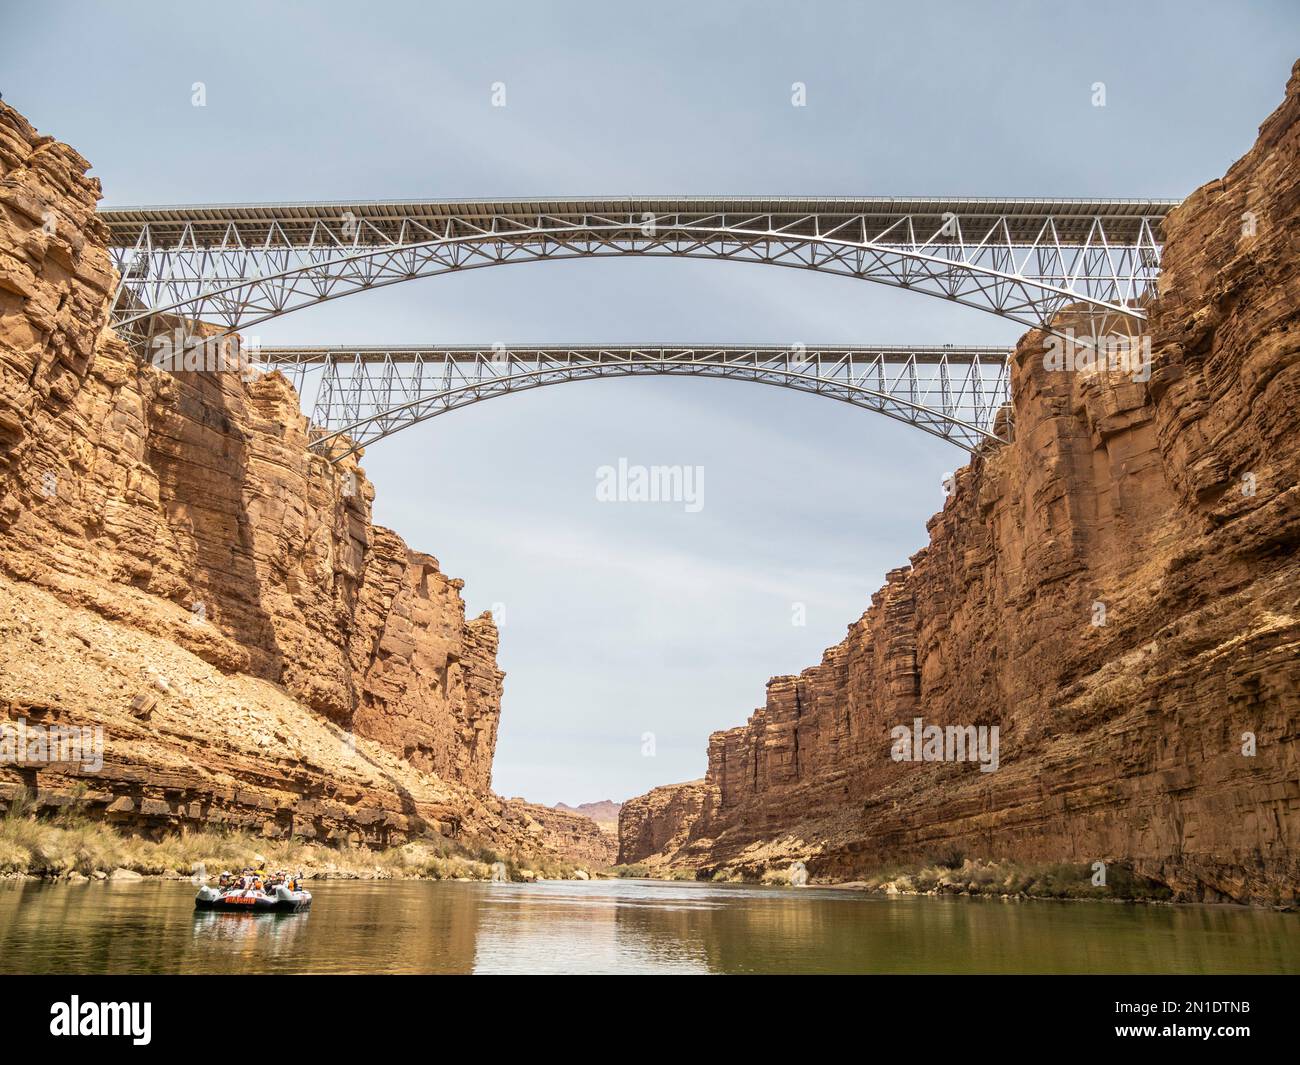 Ponts Navajo vus du fleuve Colorado, parc national du Grand Canyon, site classé au patrimoine mondial de l'UNESCO, Arizona, États-Unis d'Amérique Banque D'Images